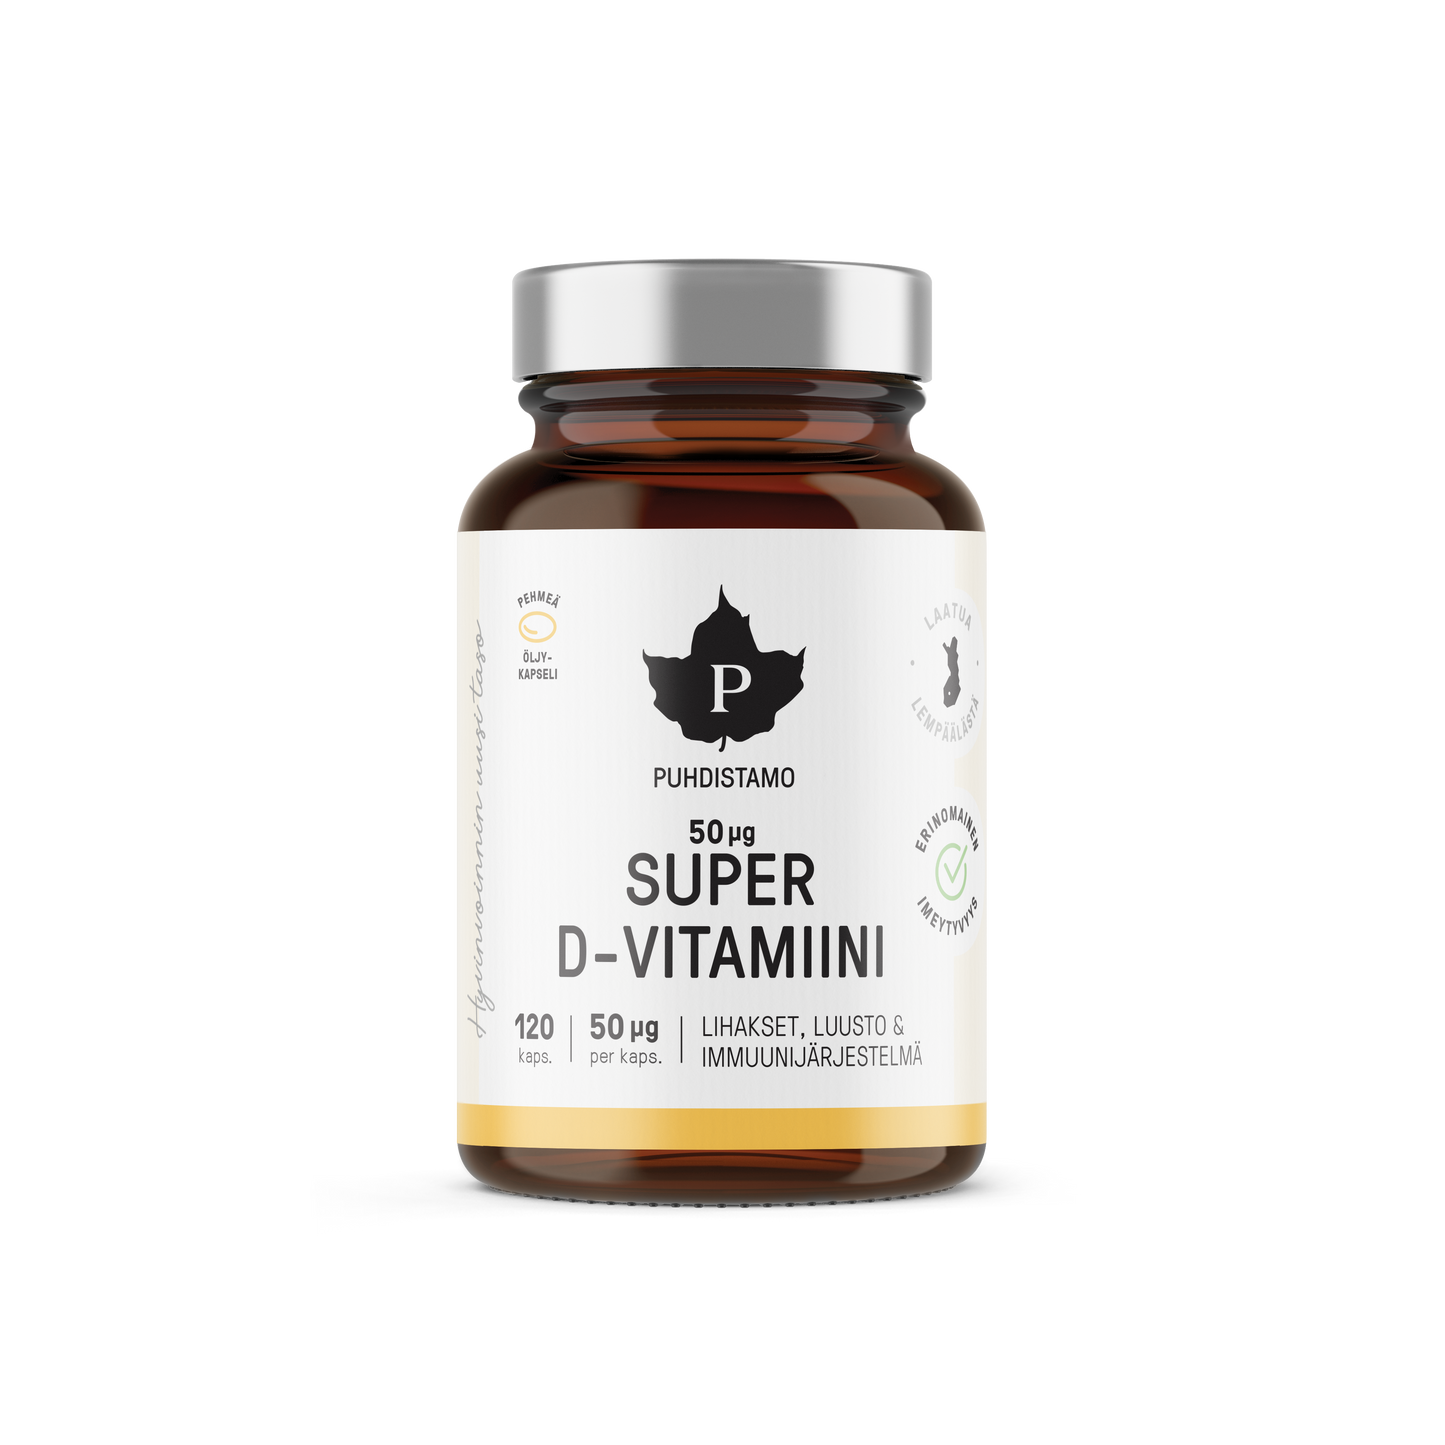 Puhdistamo Super D-vitamiini 50 mikrog-Puhdistamo-Hyvinvoinnin Tavaratalo